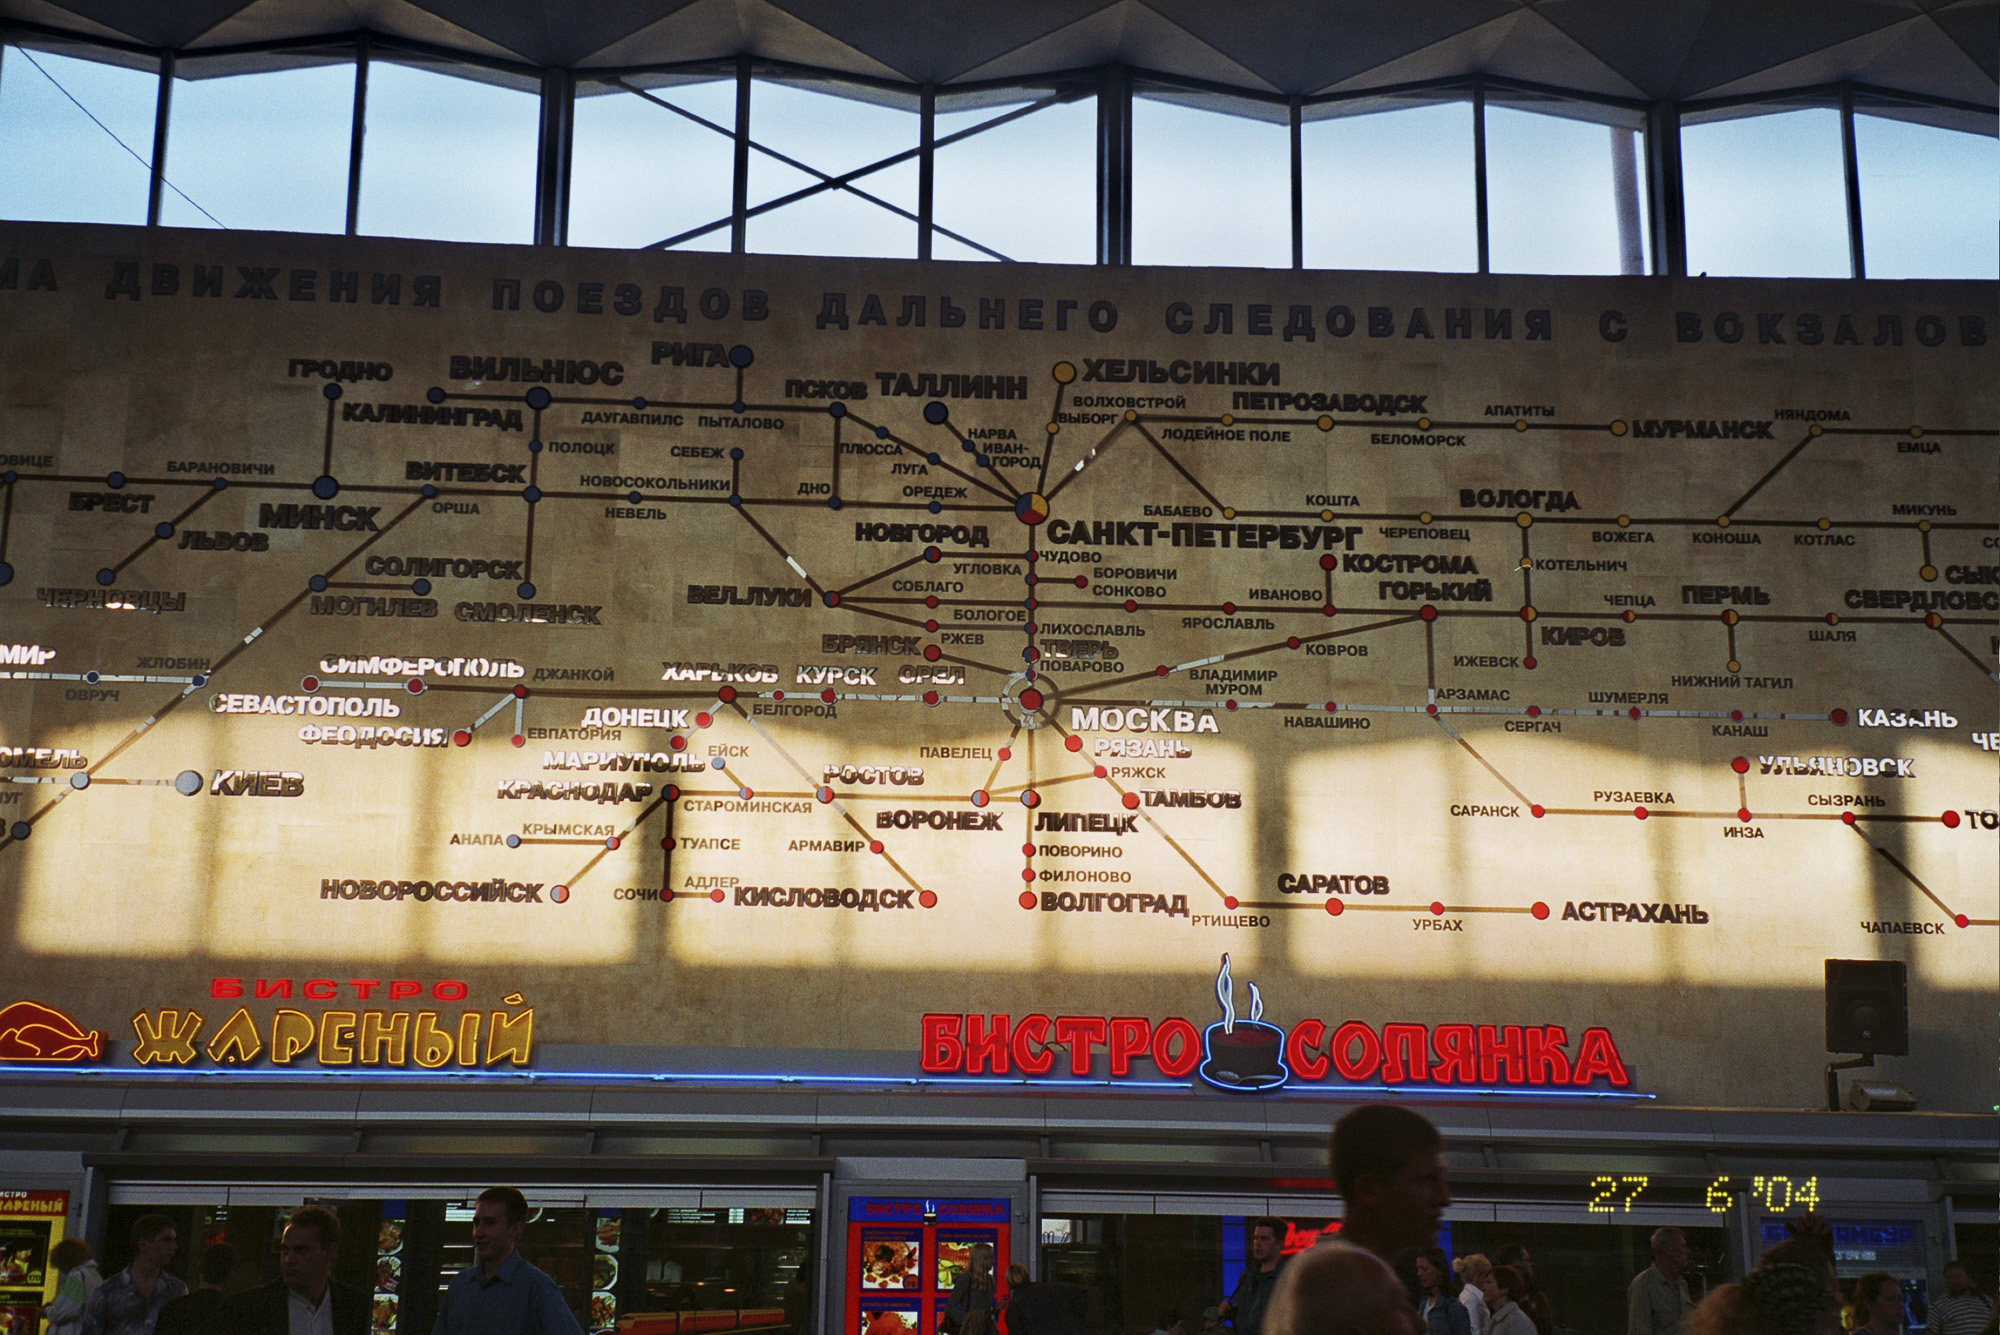 Как добраться до московского вокзала санкт-петербурга?